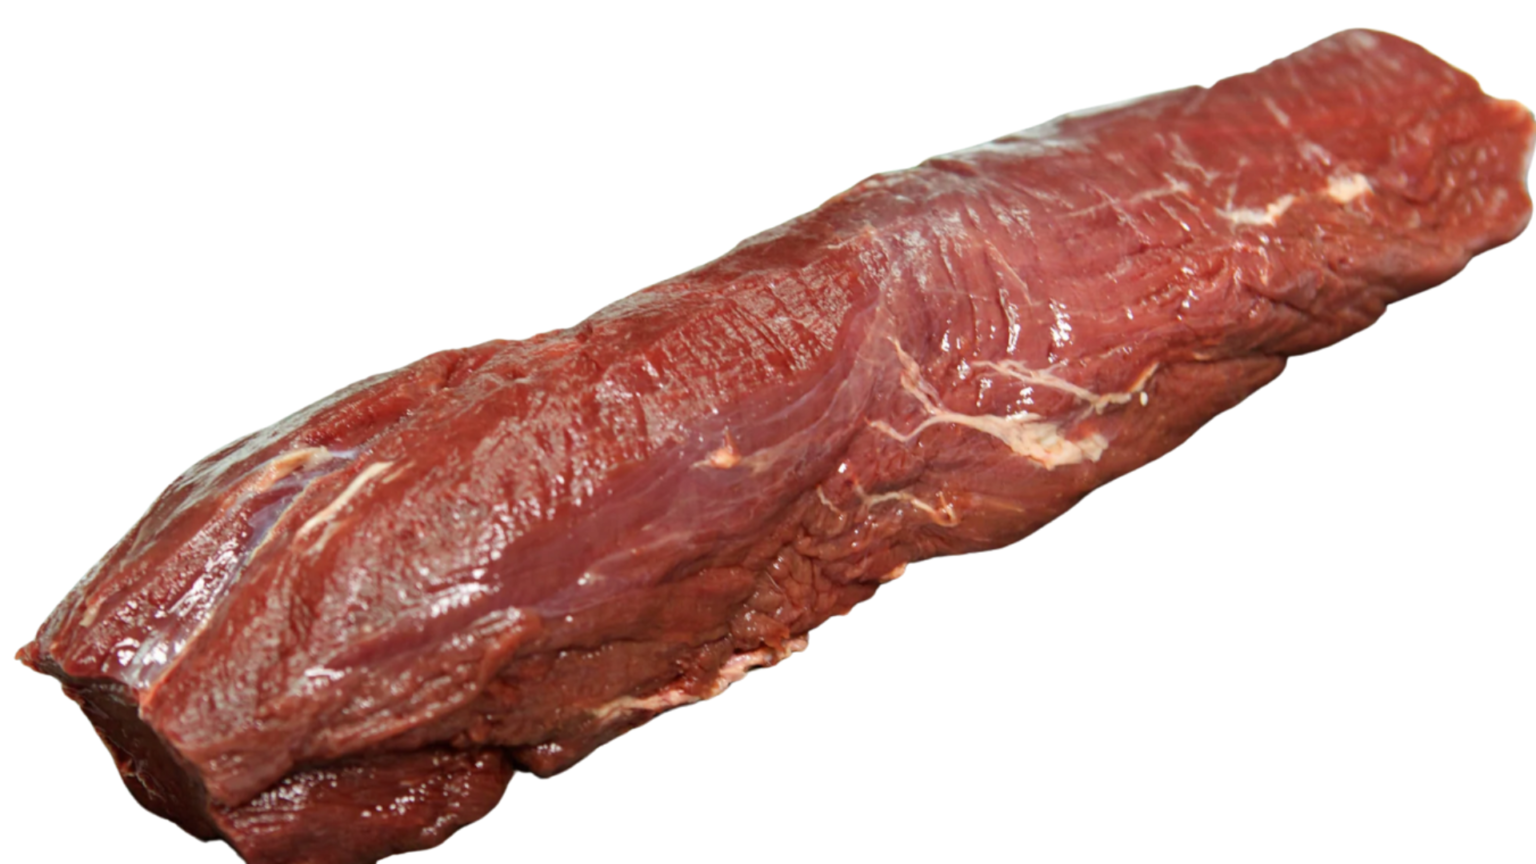 elk meat for sale houston tx